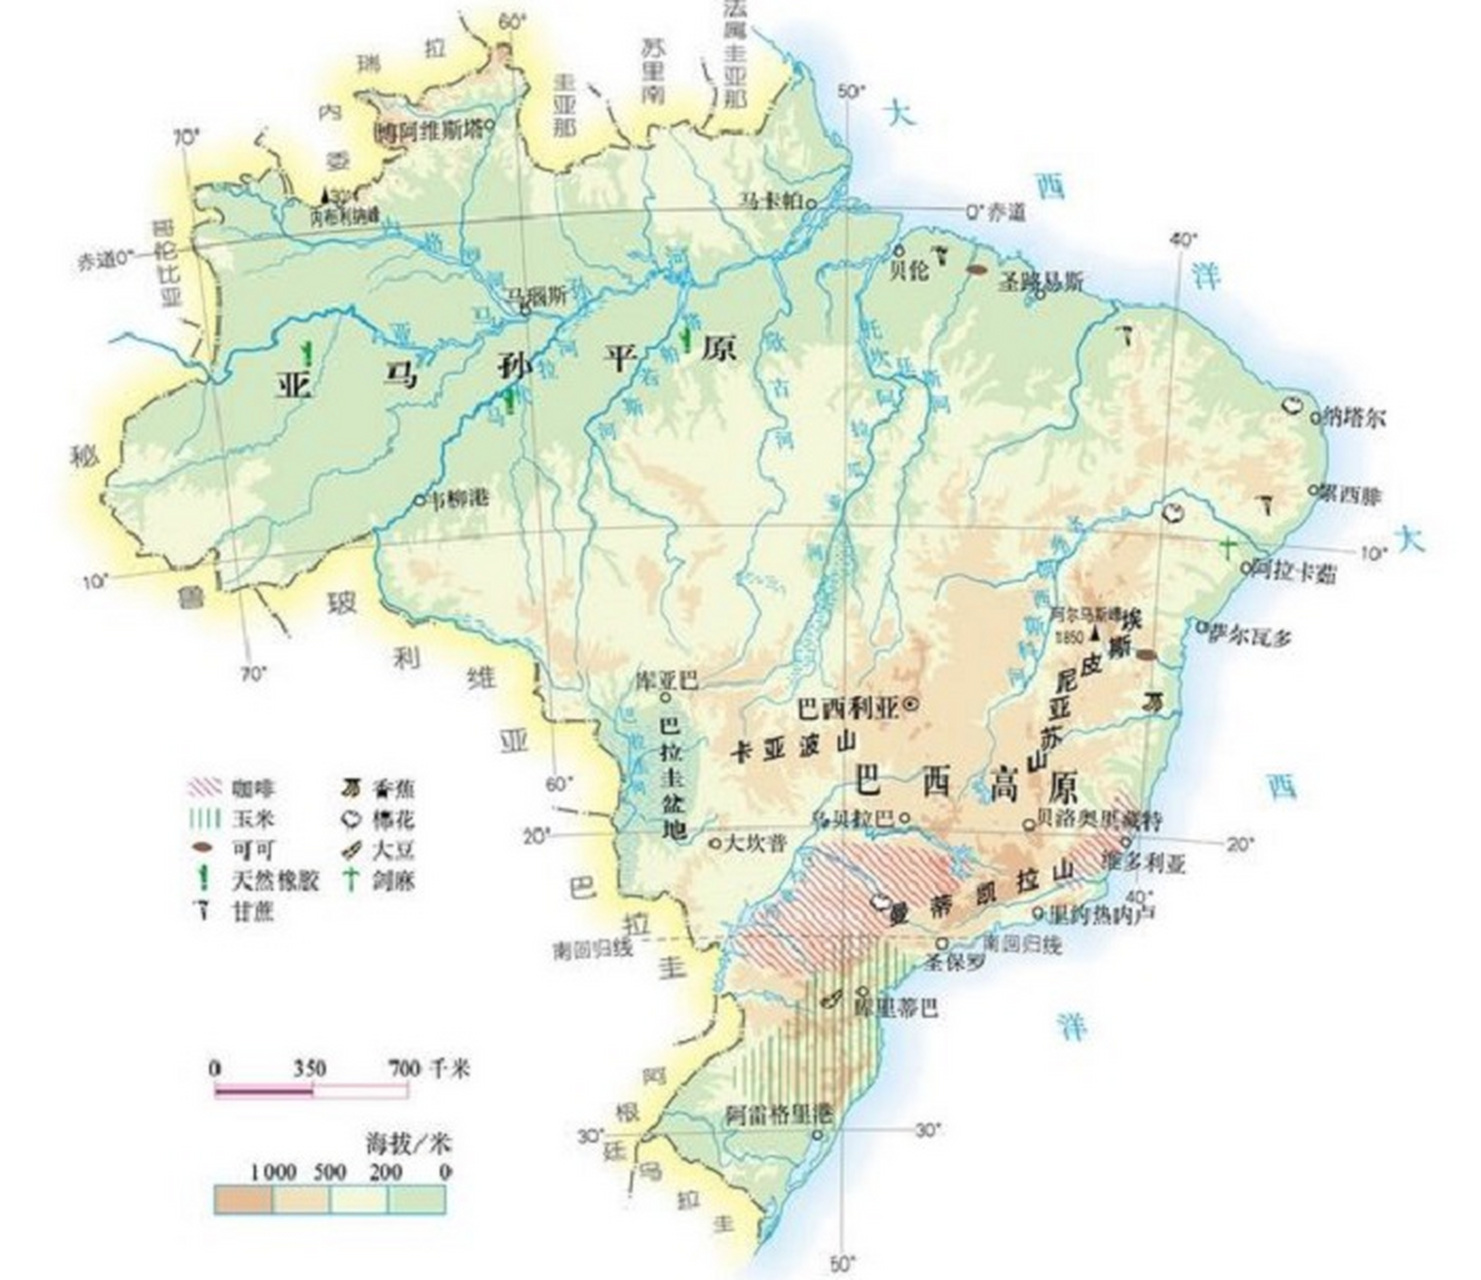 巴西地形图和农作物分布图